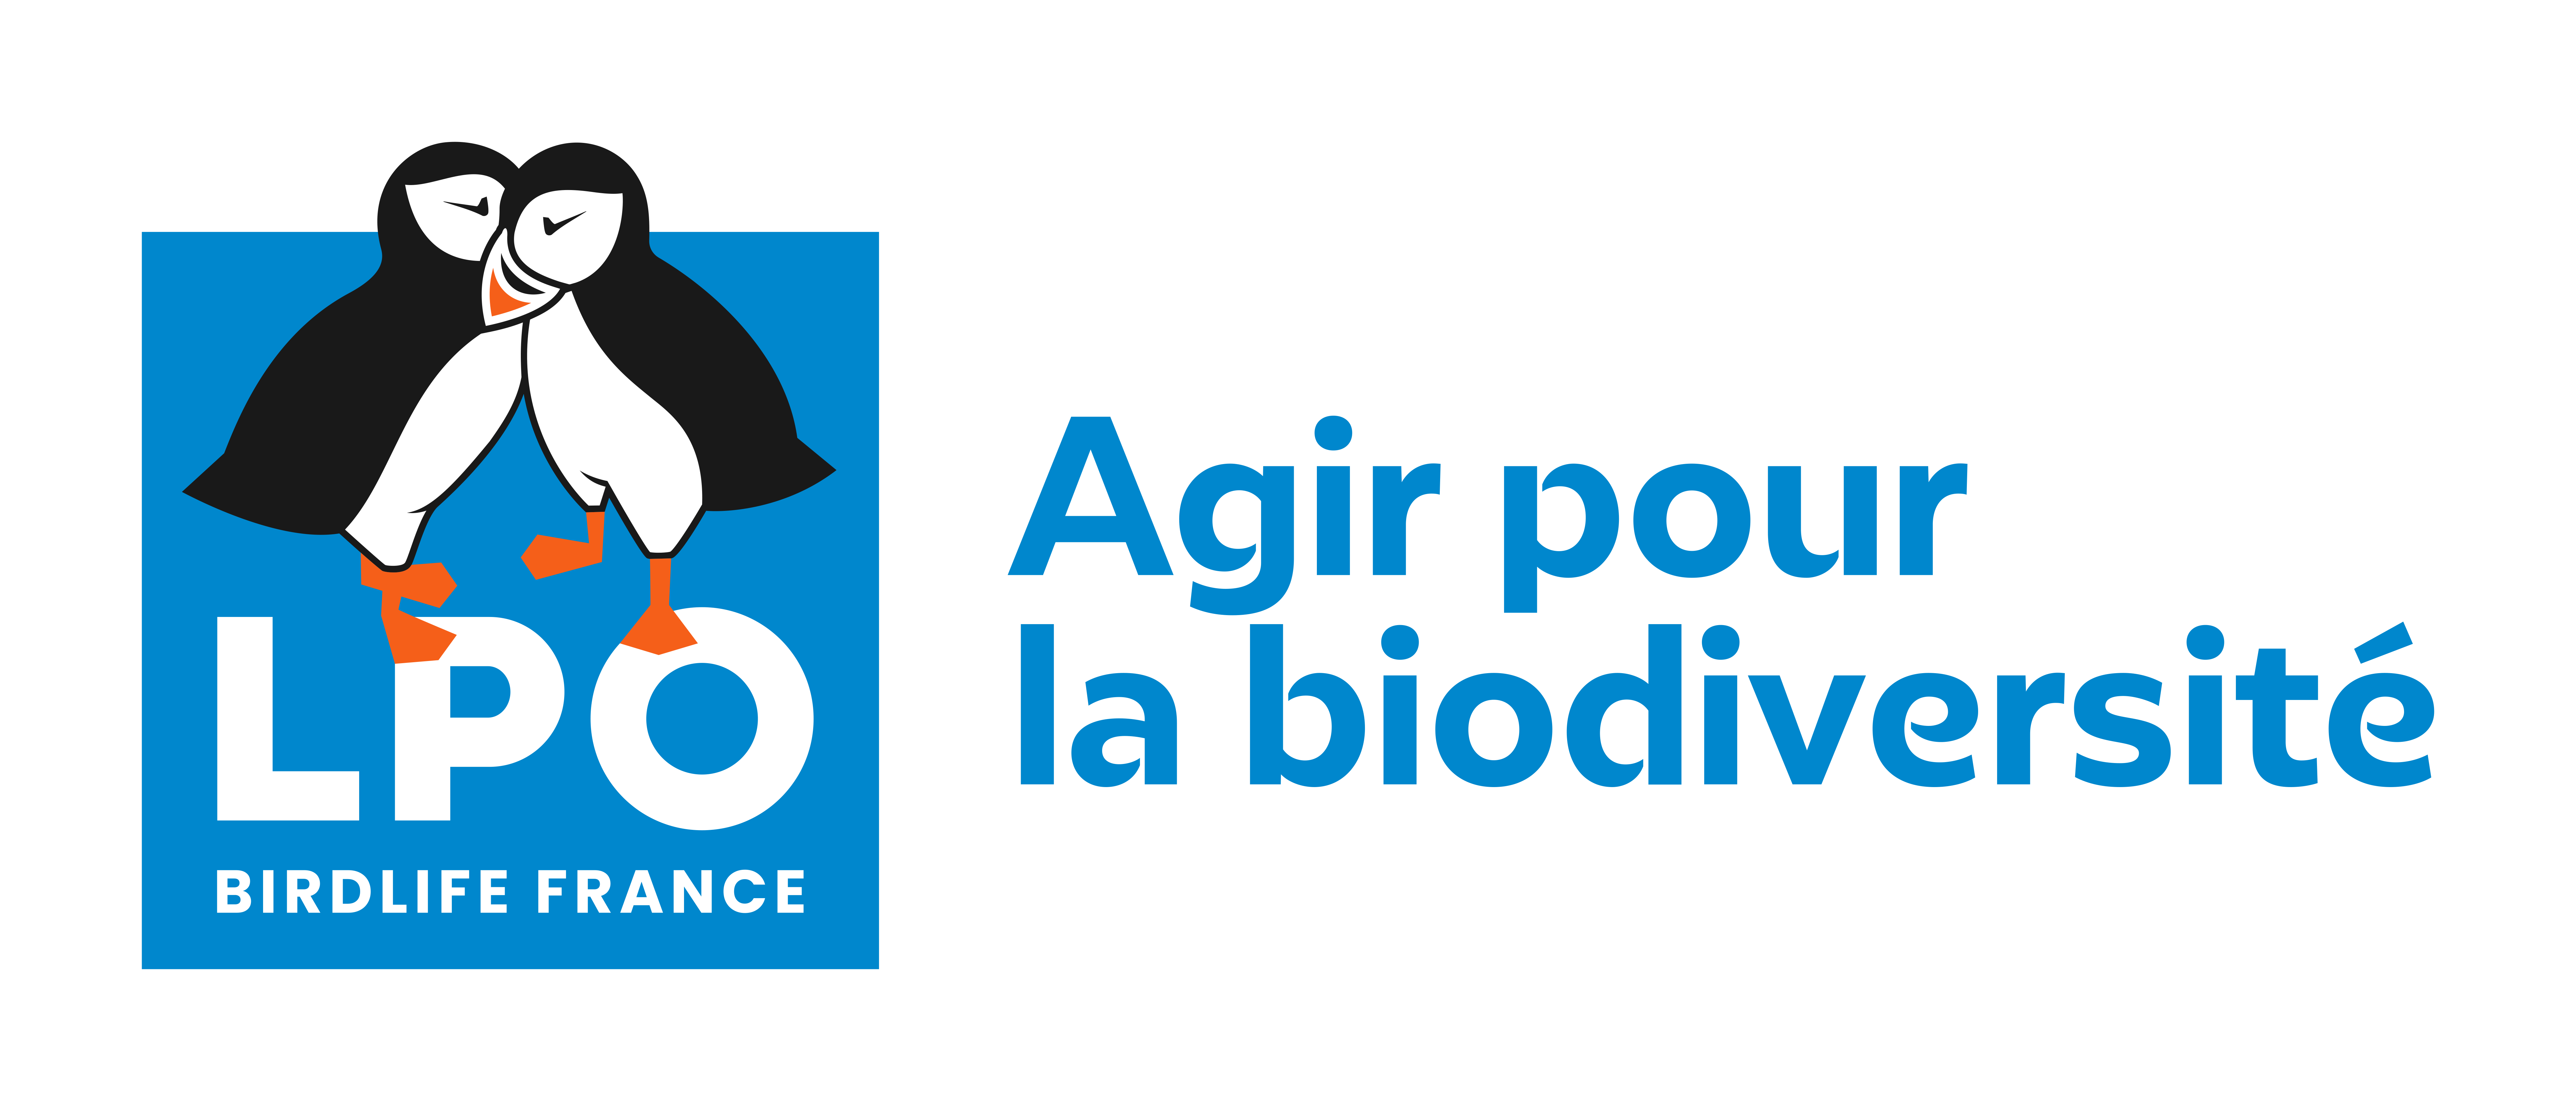 Coccinelle à sept points - LPO (Ligue pour la Protection des Oiseaux) -  Agir pour la biodiversité